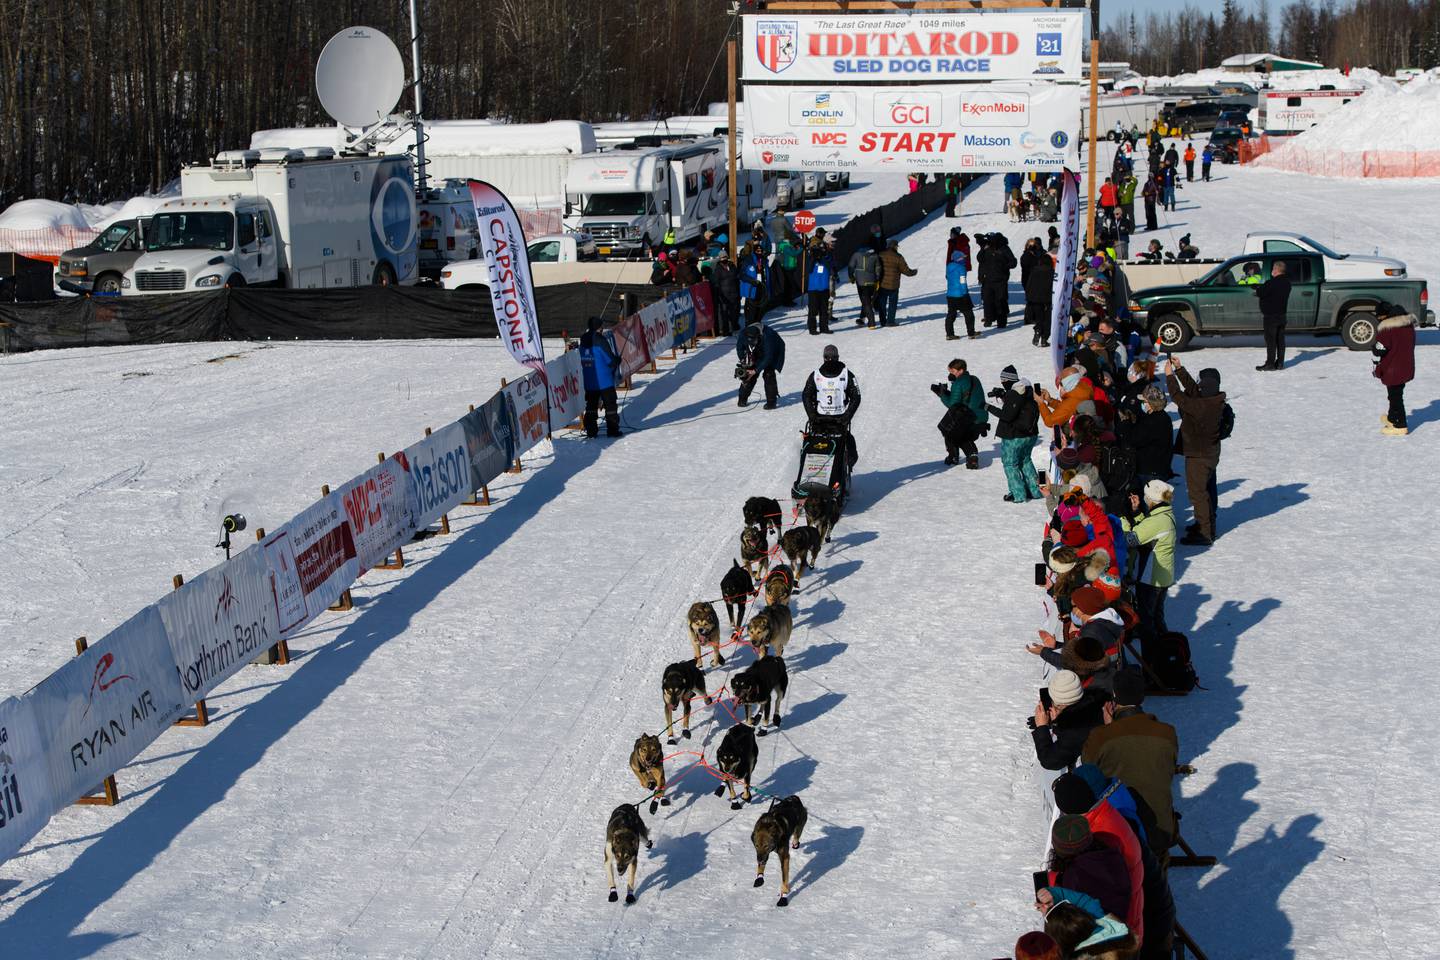 Iditarod 2021, Iditarod Trail Sled Dog Race, Willow, musher